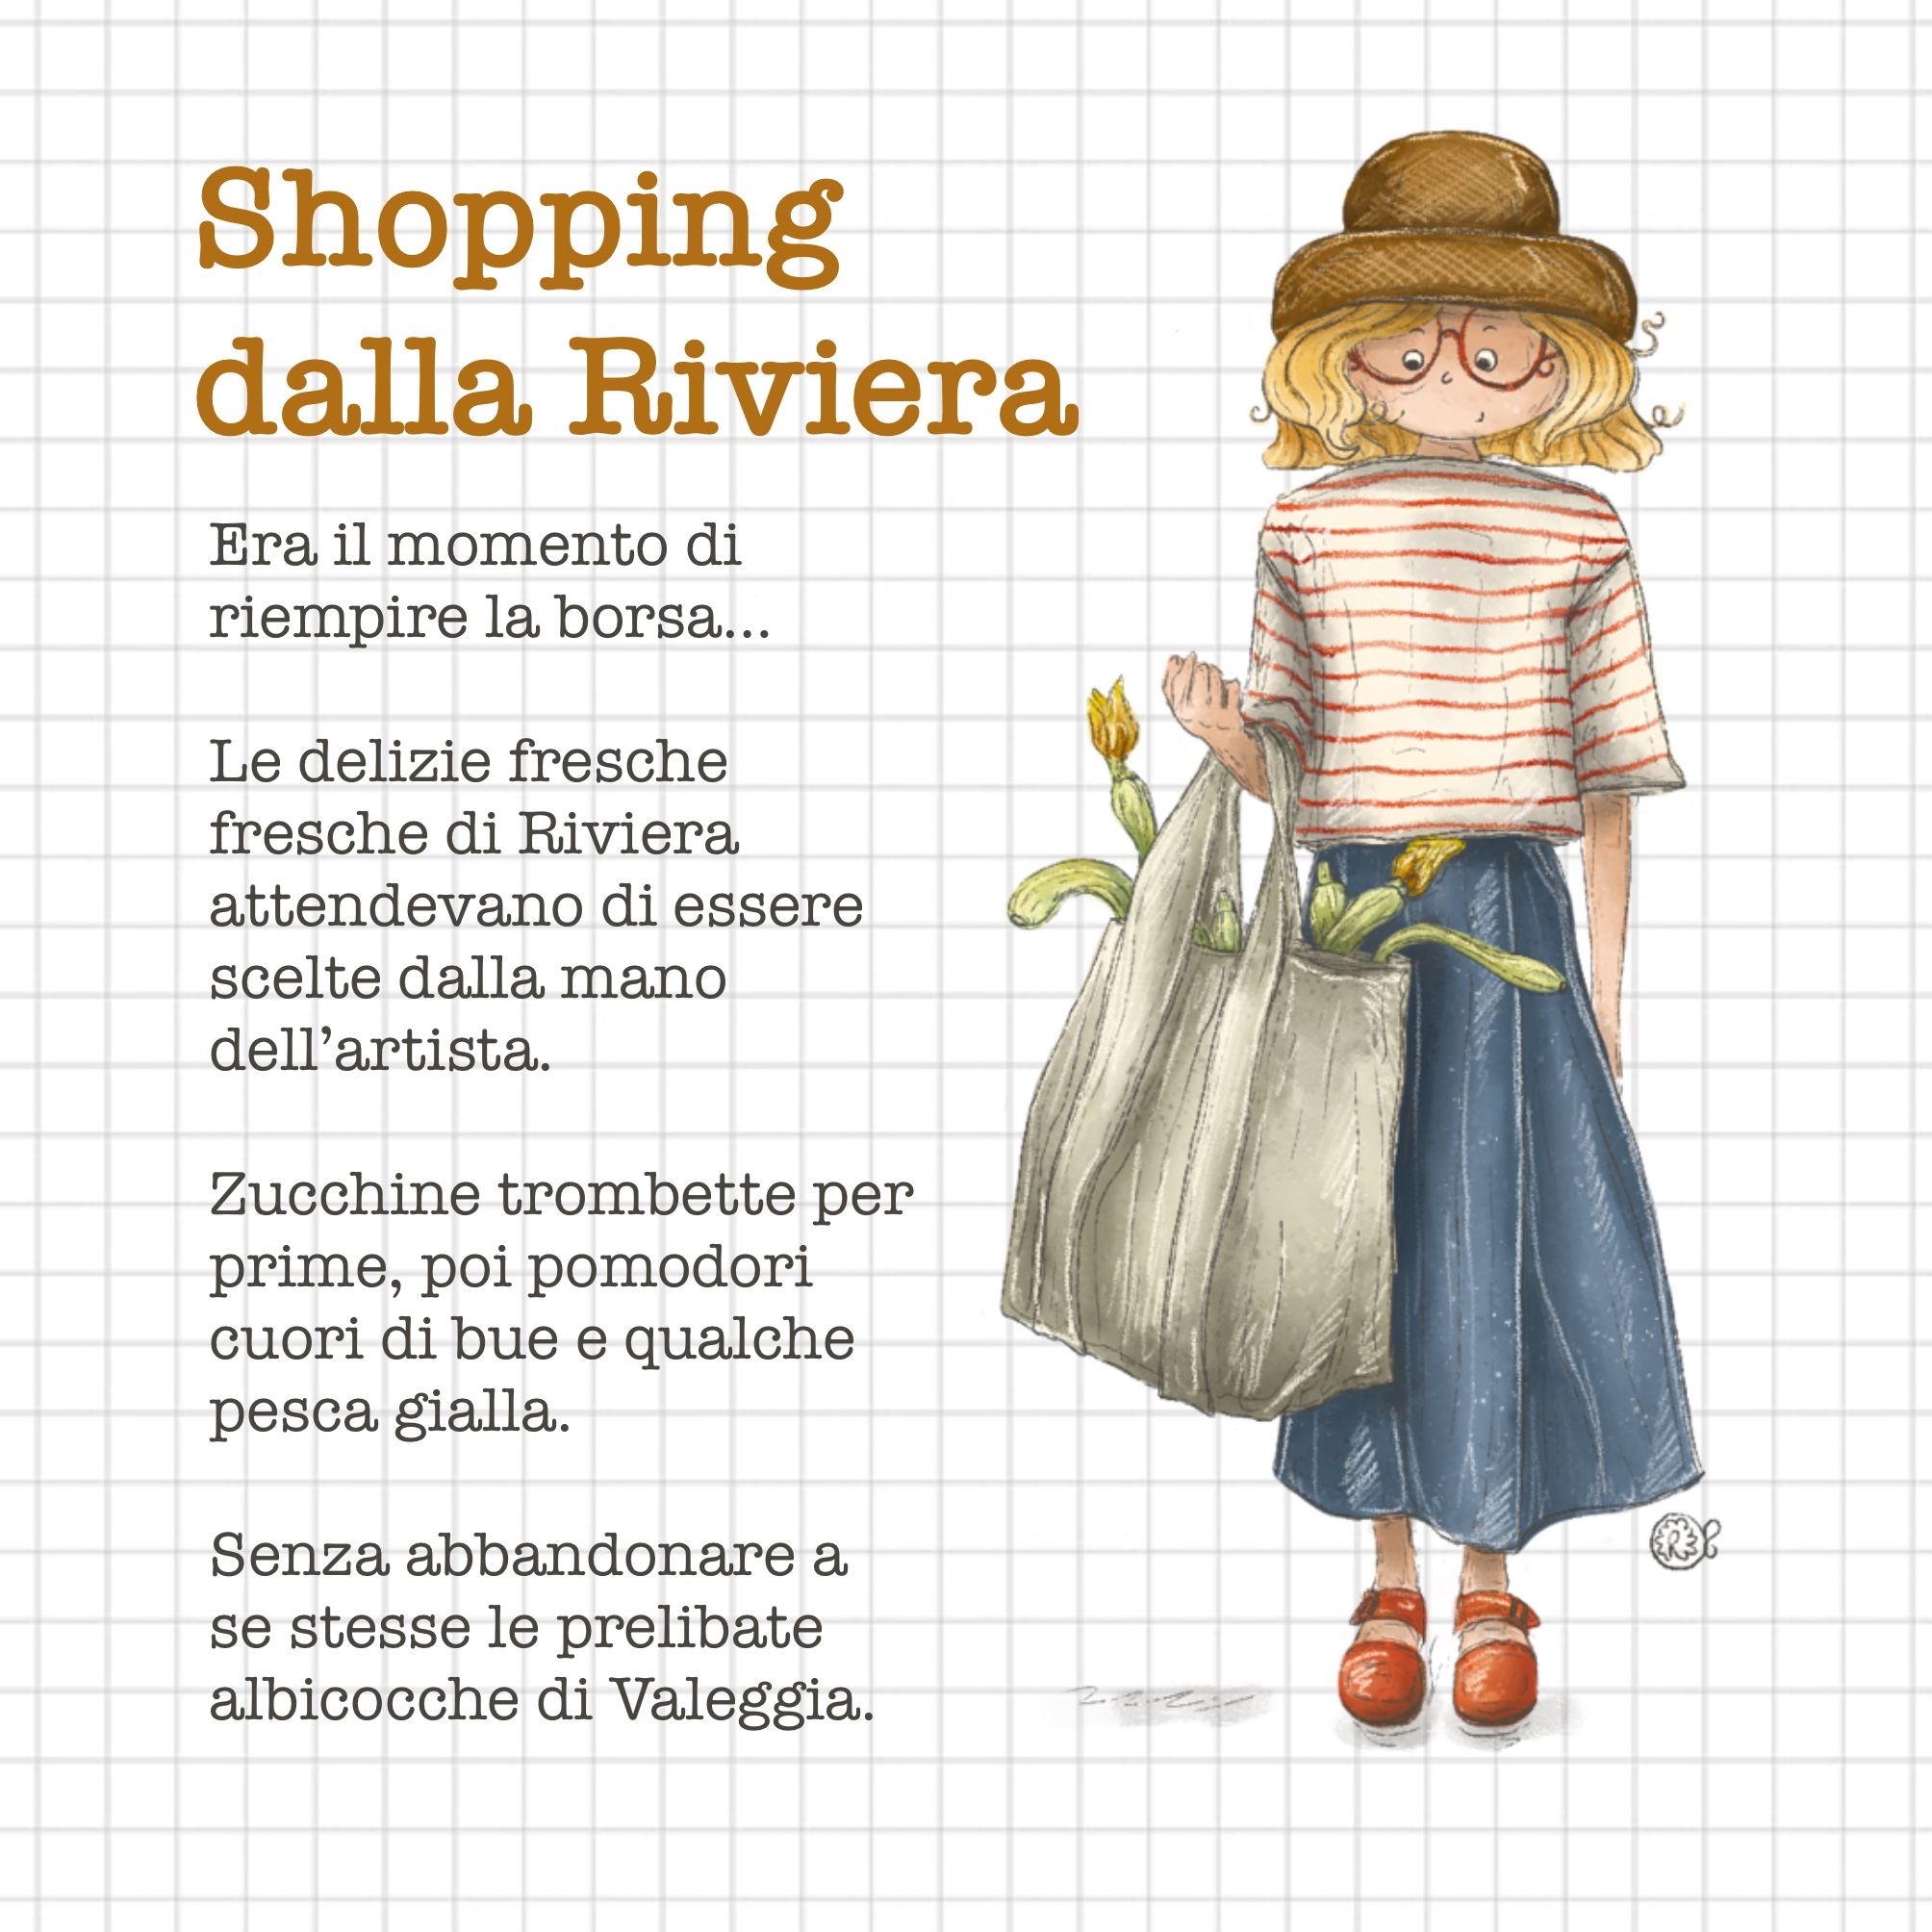 Shopping dalla Riviera